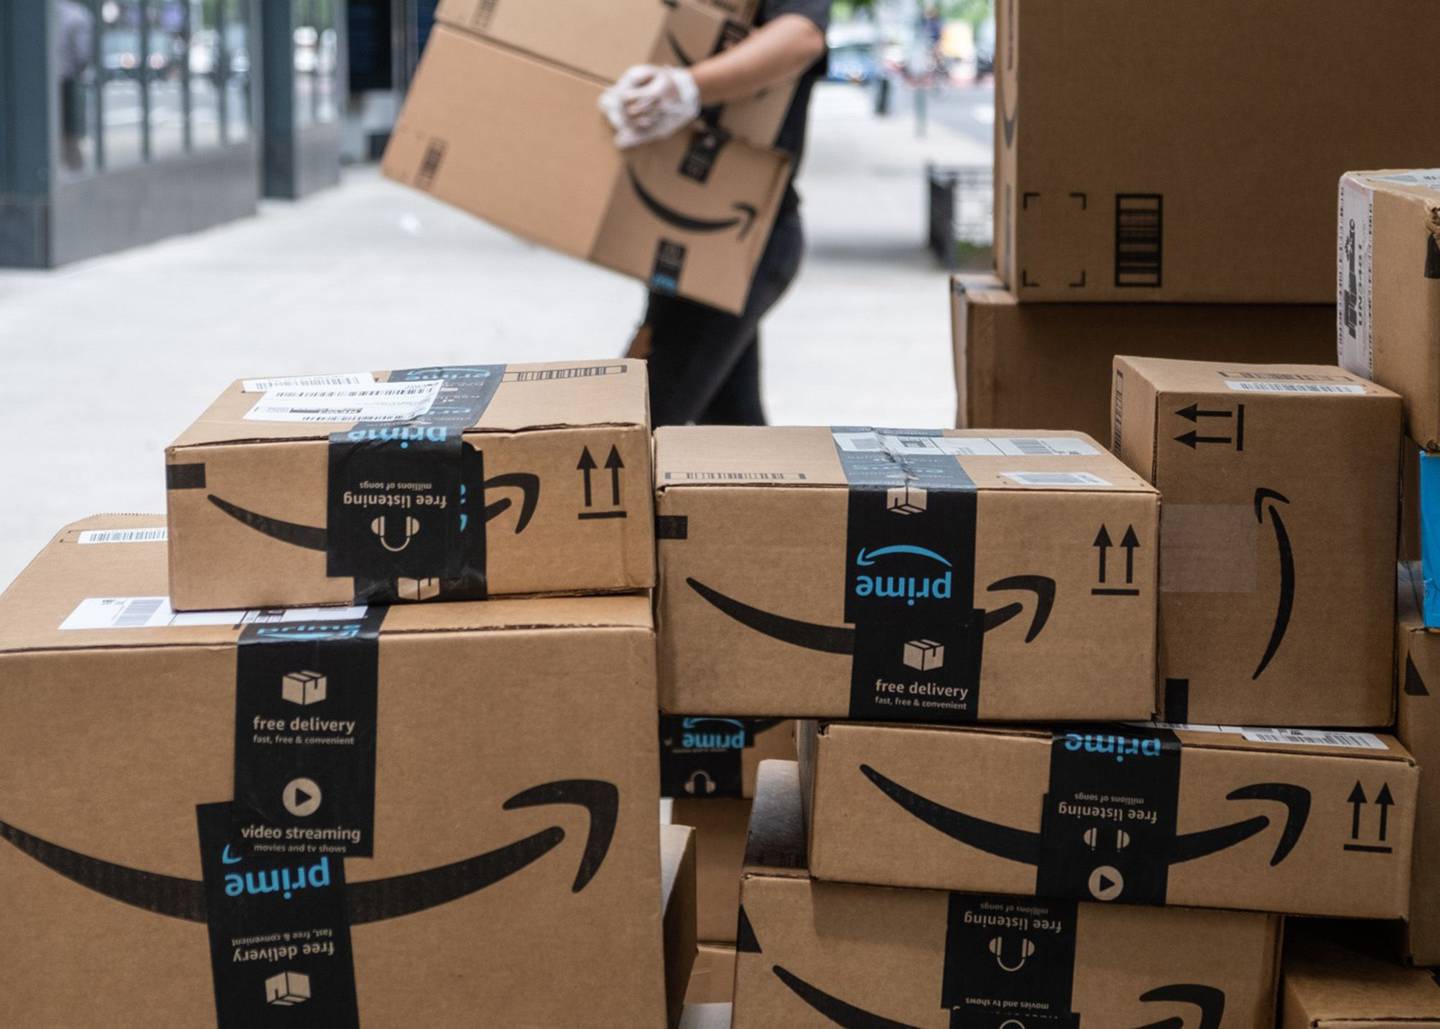 Los paquetes de Amazon.com se apilan en la acera en Nueva York.